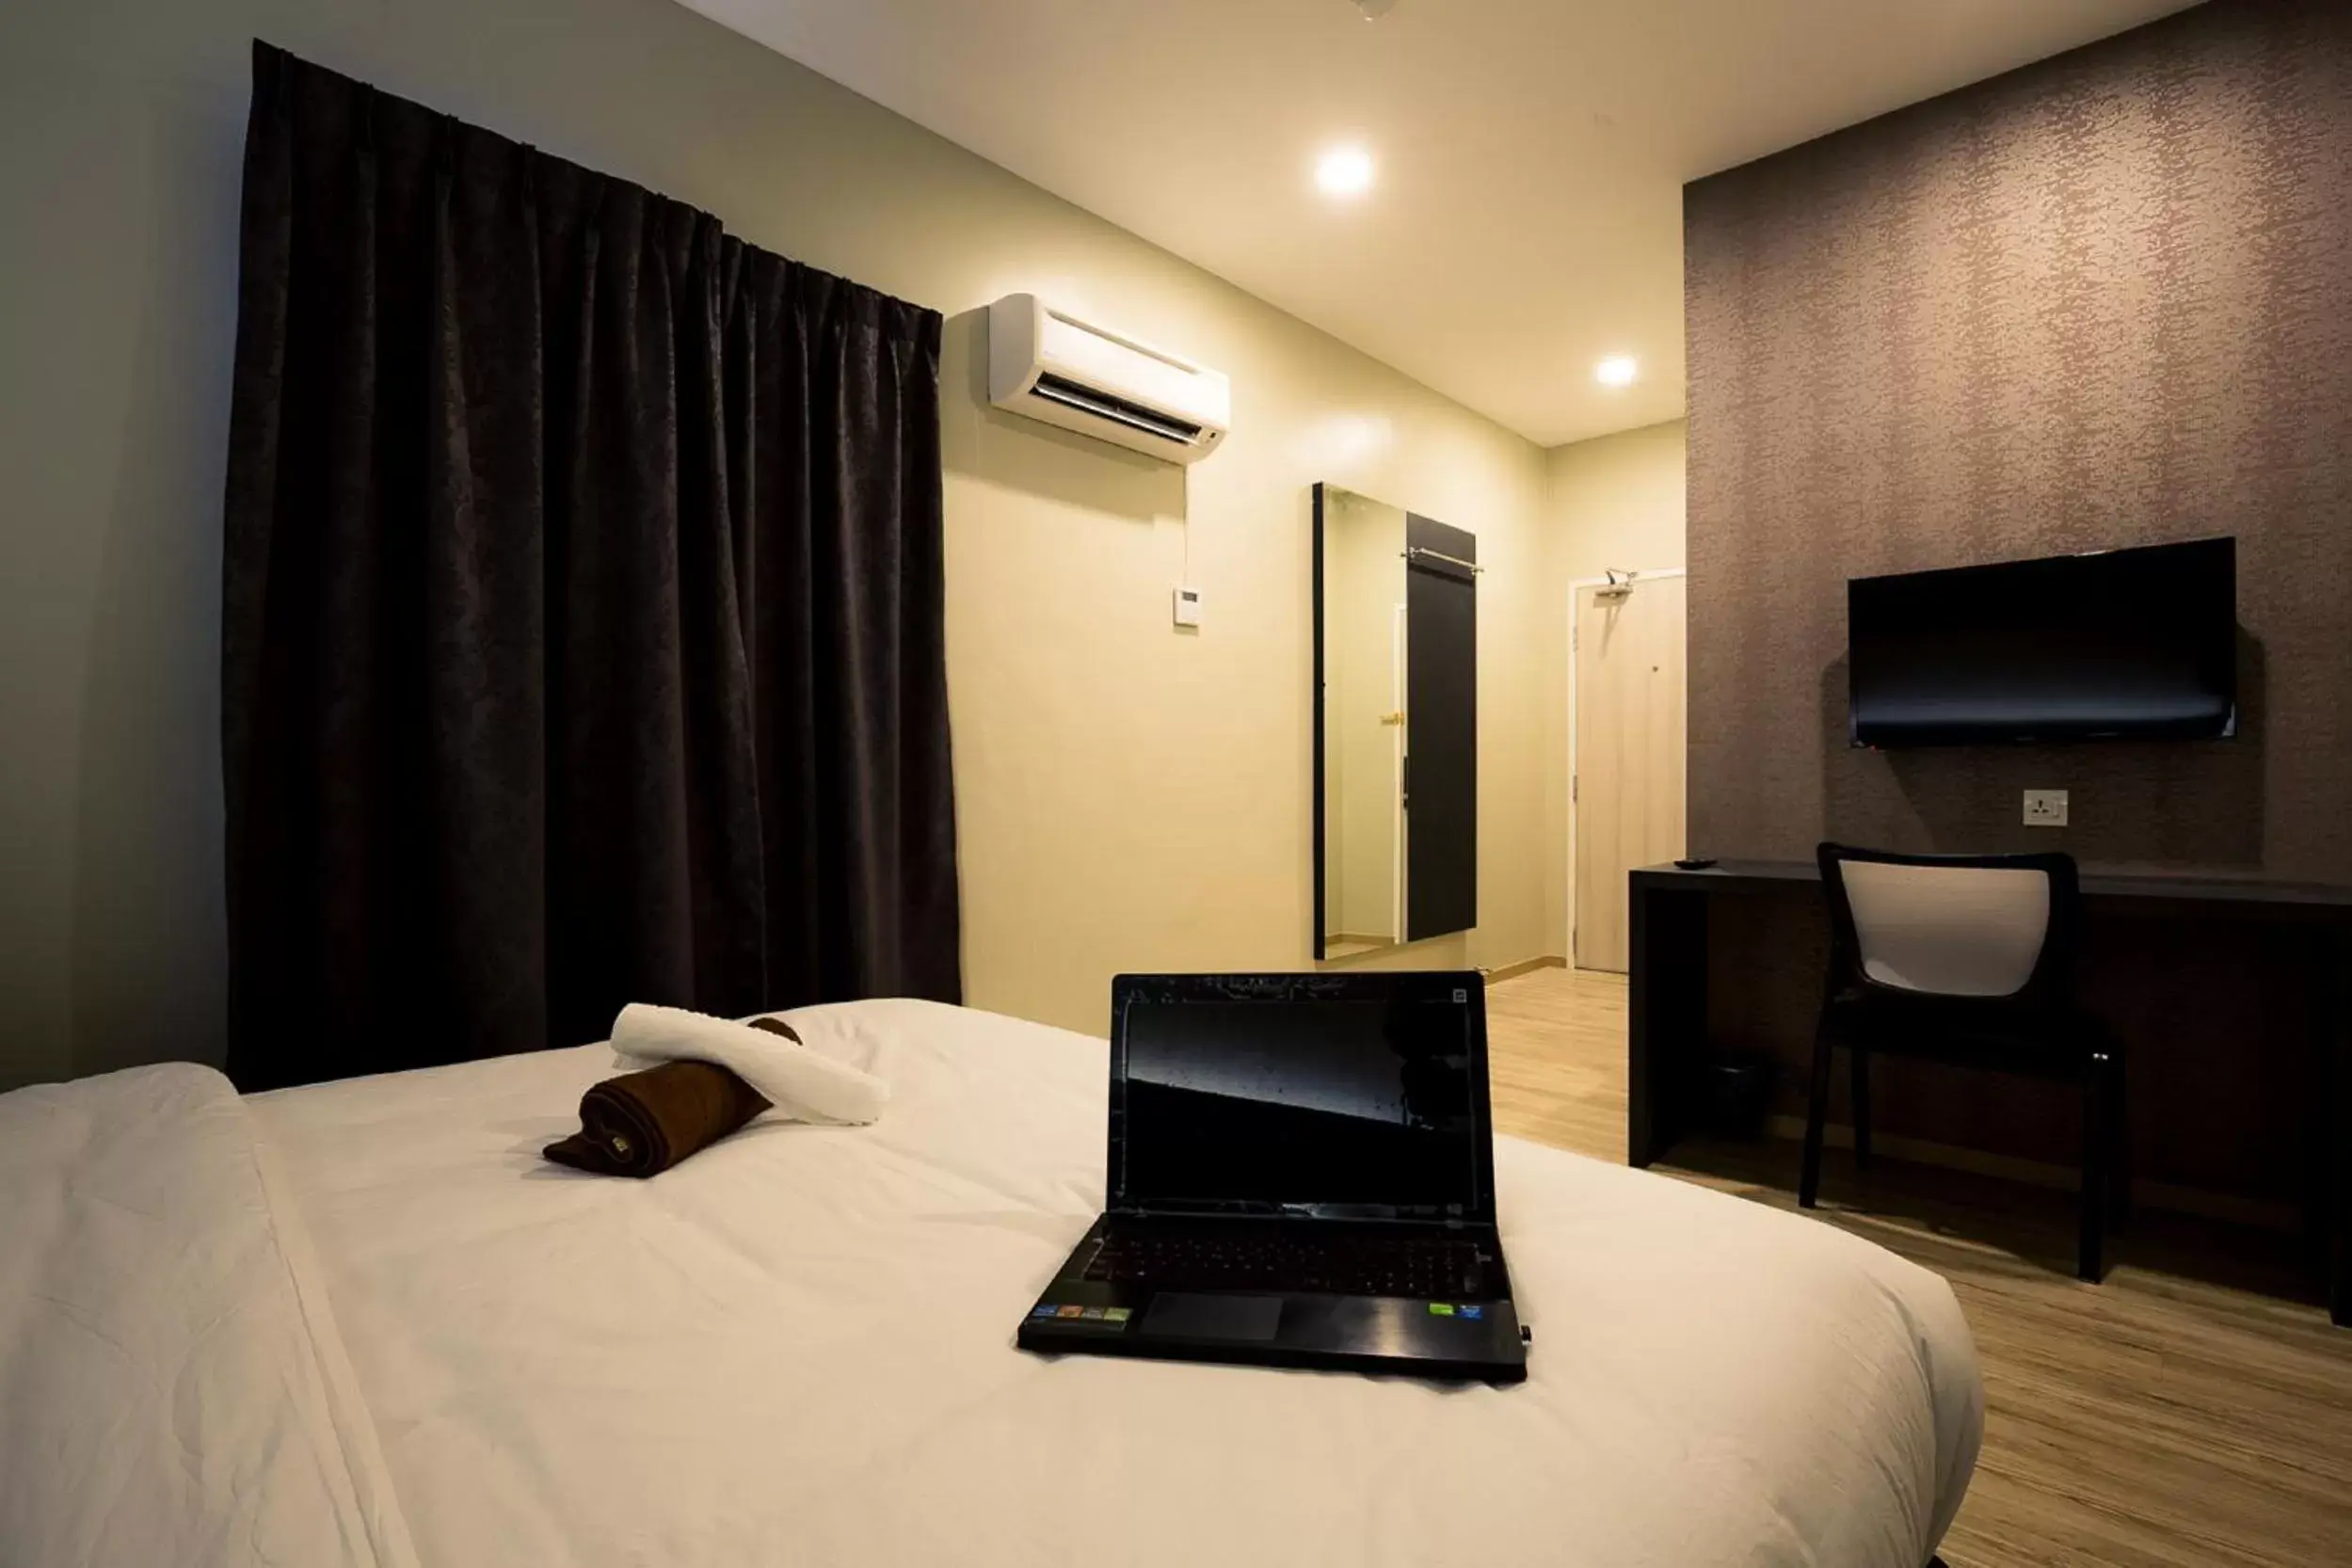 Bedroom, Room Photo in Golden Roof Hotel Sunway Ipoh